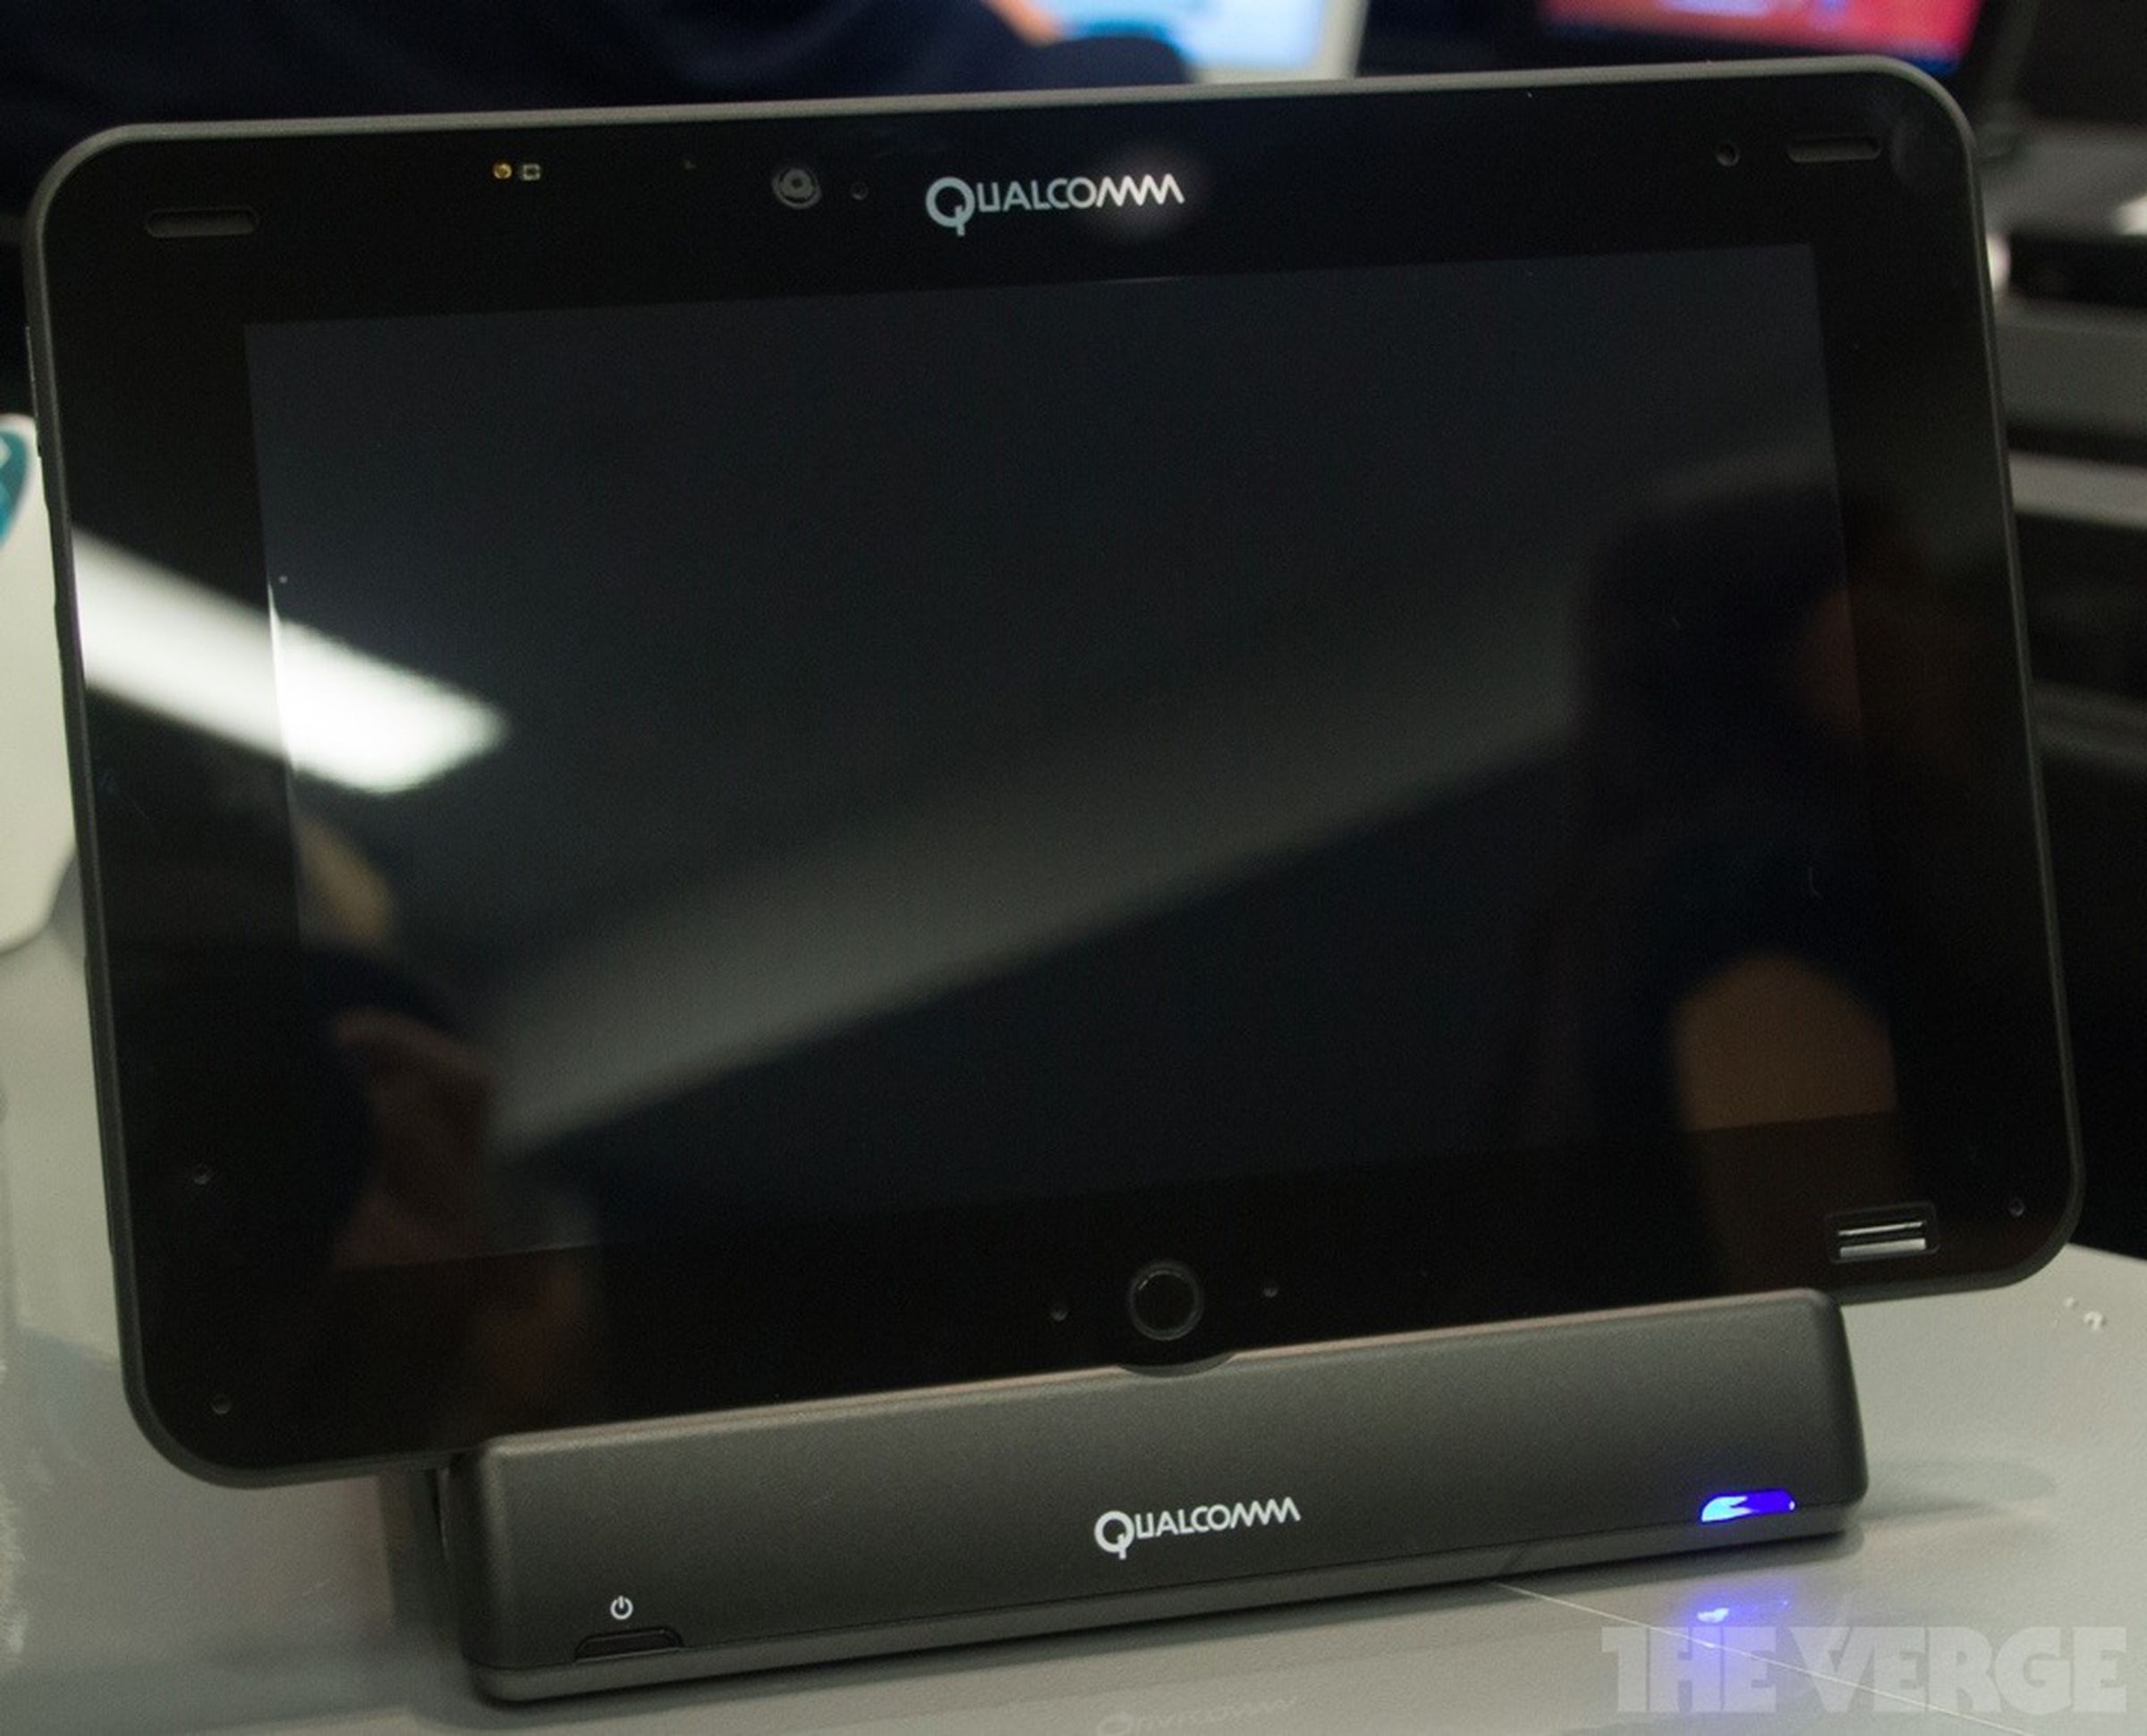 Qualcomm Snapdragon S4 Pro quad-core developer tablet photos